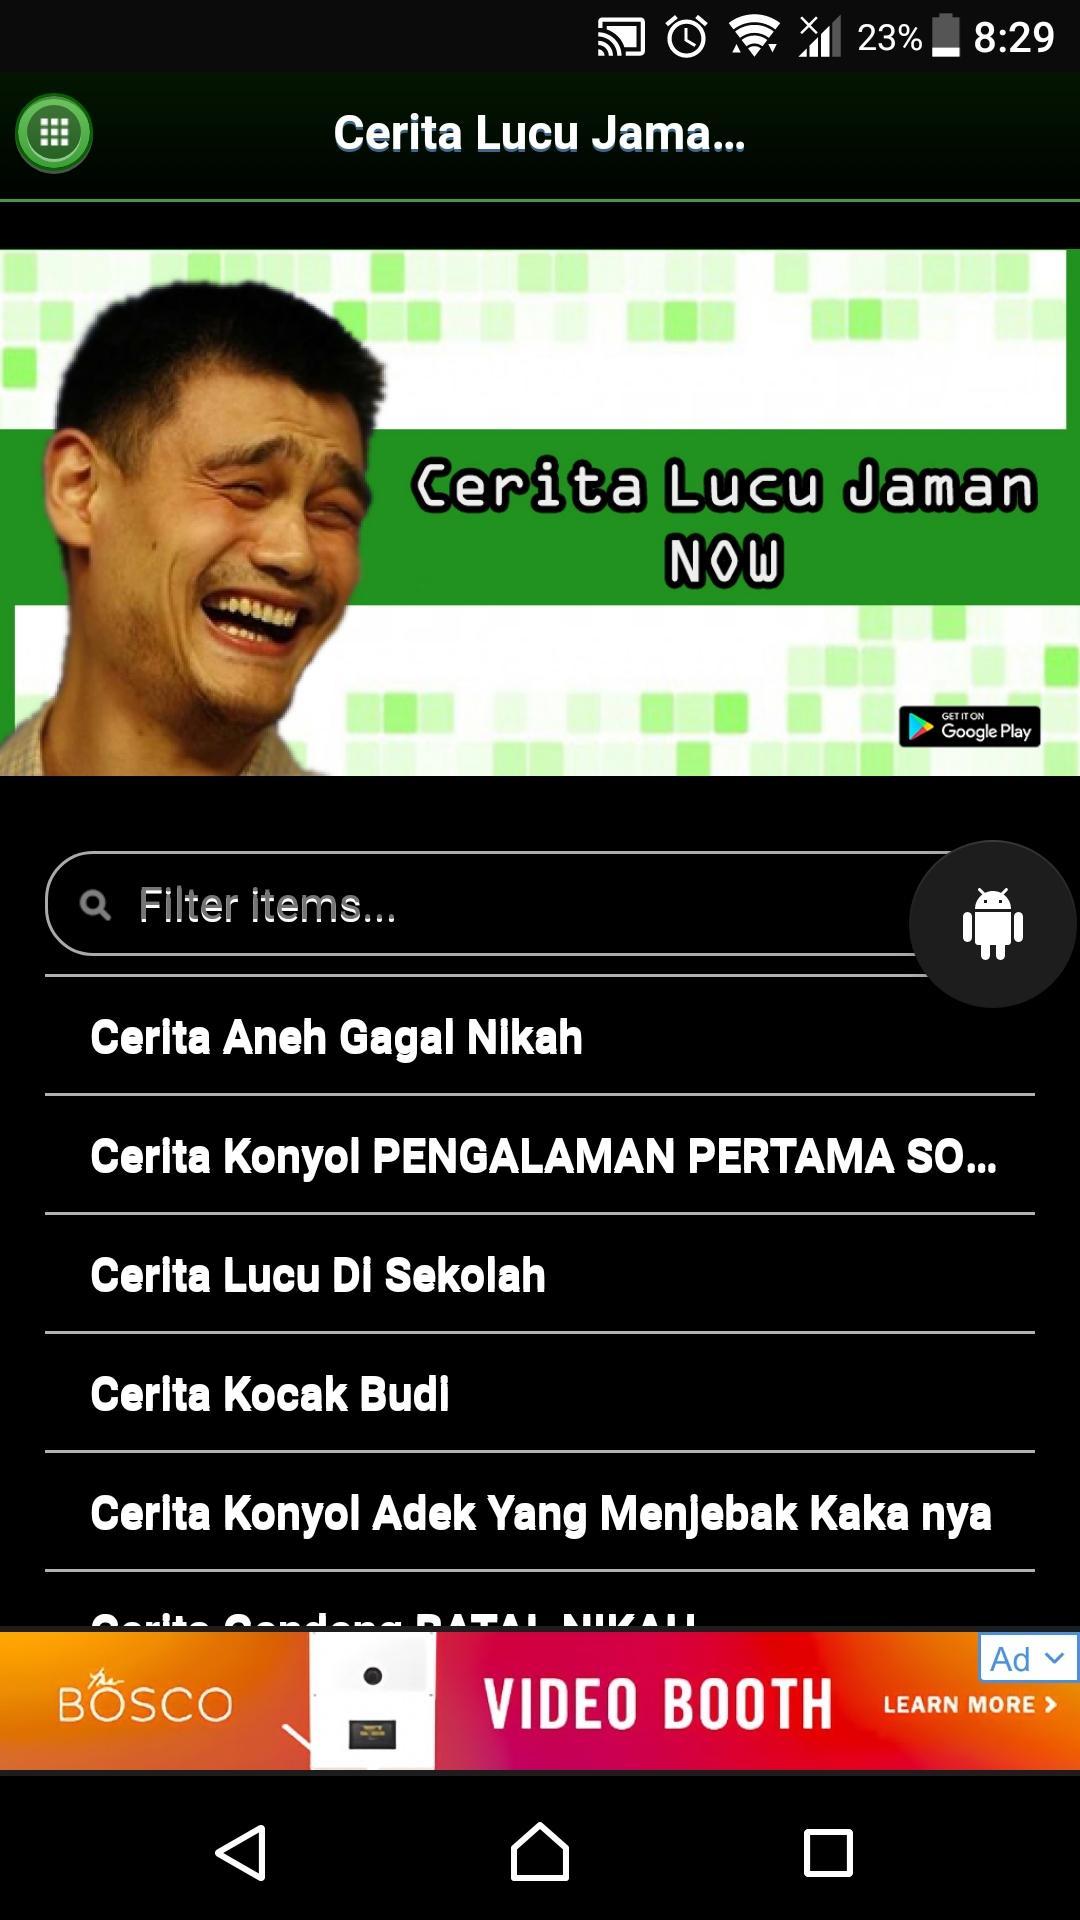 Cerita Lucu Jaman Now For Android Apk Download